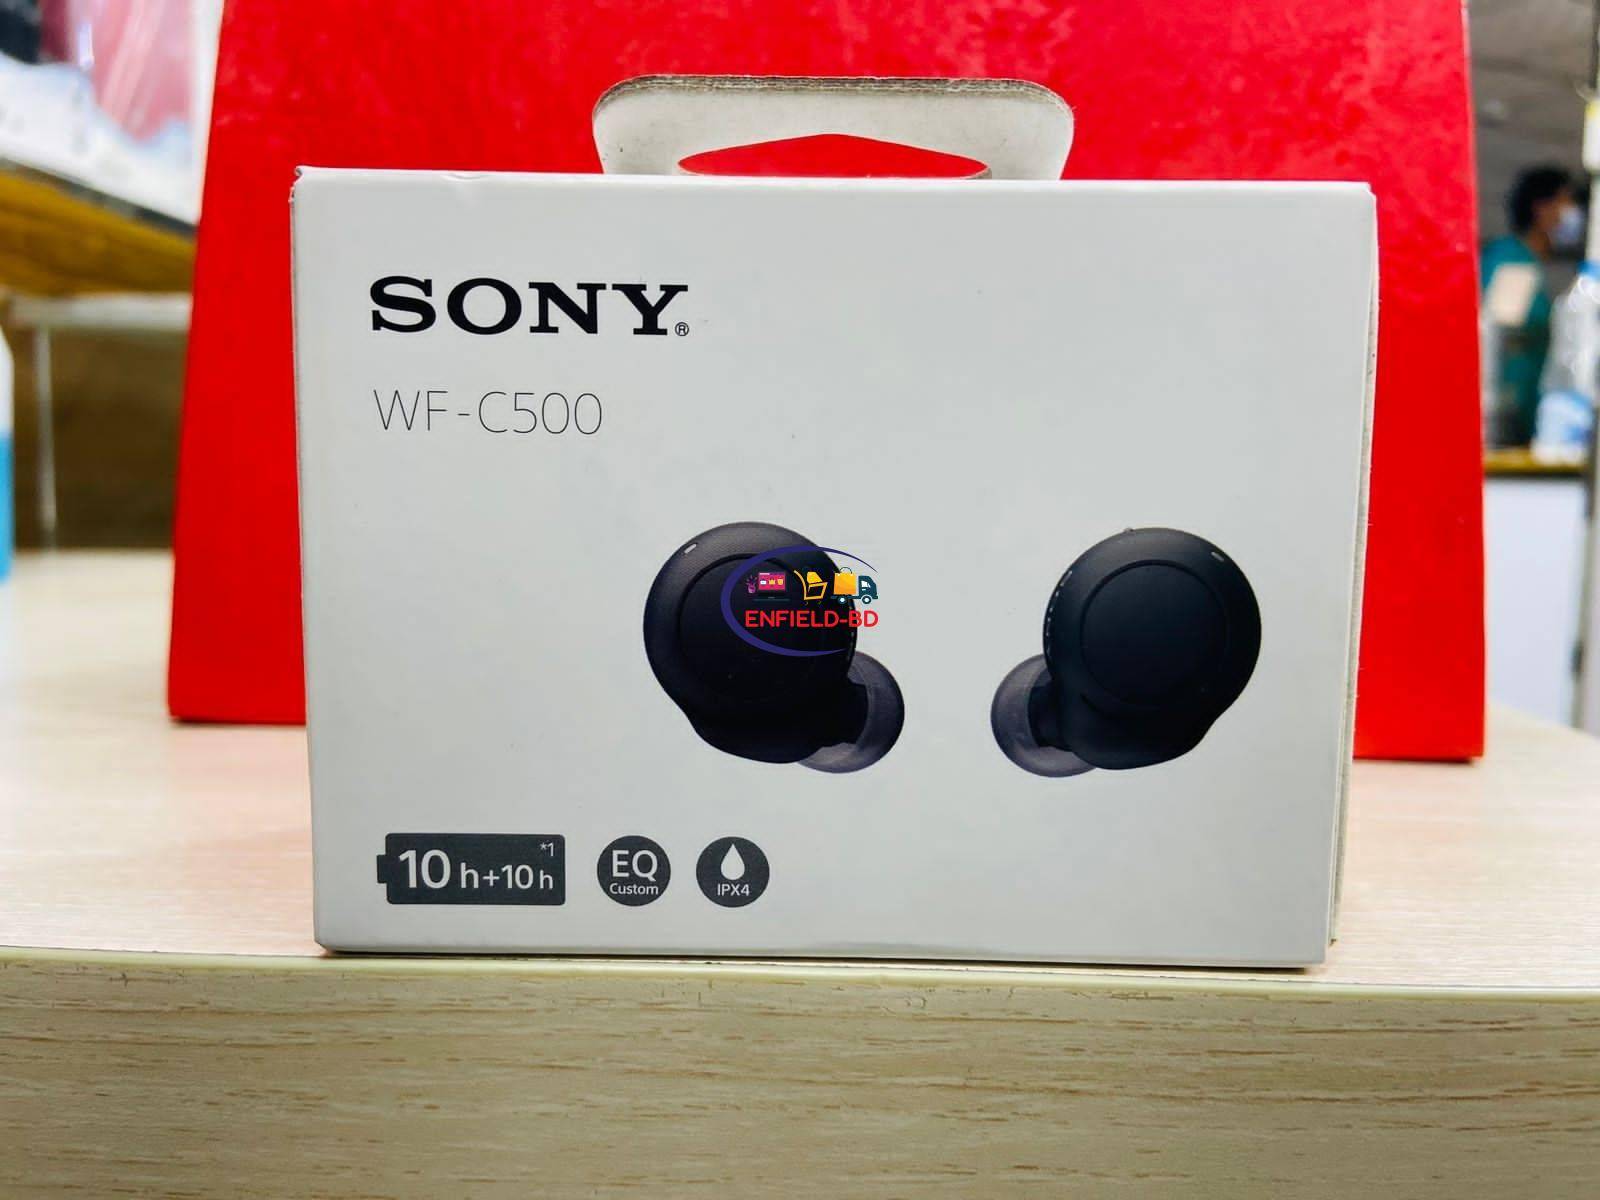 Sony Wf-c500 Truly Wireless In-ear Bluetooth Earbud Headphones : Target